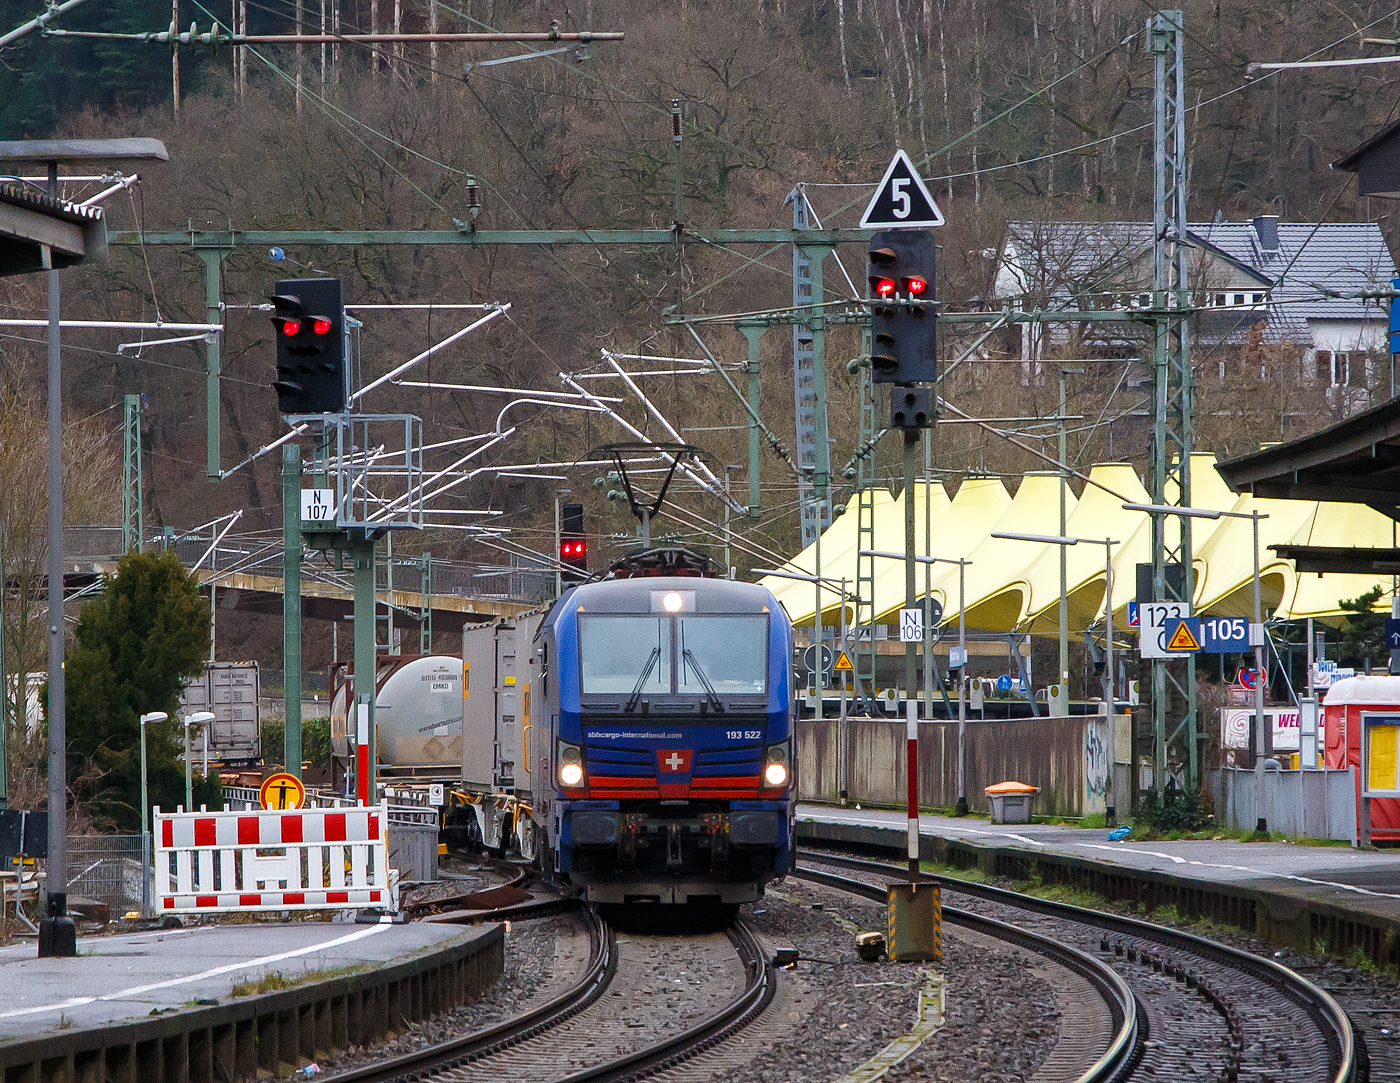 Die an die SBB Cargo International AG vermietete 193 522 „Elbe“ (91 80 6193 522-0 D-SIEAG) der SüdLeasing GmbH (Stuttgart, eingestellt in Deutschland durch Siemens) fährt am 14.01.2023, mit einem HUPAC-KLV-Zug, durch den Bahnhof Betzdorf (Sieg) in Richtung Köln.

Die Siemens Vectron MS wurde 2019 von Siemens Mobilitiy in München-Allach unter der Fabriknummer 22661 gebaut. Eigentümer ist die Südleasing GmbH in Stuttgart (LBBW-Tochter) die 20 dieser Loks an die SBB Cargo International vermietet hat, eingestellt sind sie in Deutschland durch die Siemens Mobilitiy. Es besteht zudem eine Option für 20 weitere Fahrzeuge.

Diese Mehrsystem-Loks sind für den Einsatz auf dem Rhein-Alpen-Korridor vorgesehen und sind für den Betrieb in Deutschland, Österreich, Schweiz, Italien und den Niederlanden (D/A/CH/I/NL) ausgelegt. Sie verfügen über eine Leistung von 6,4 MW (160 km/h) und sind neben den nationalen Zugsicherungssystemen mit dem Europäischen Zugsicherungssystem (ETCS) ausgestattet.
